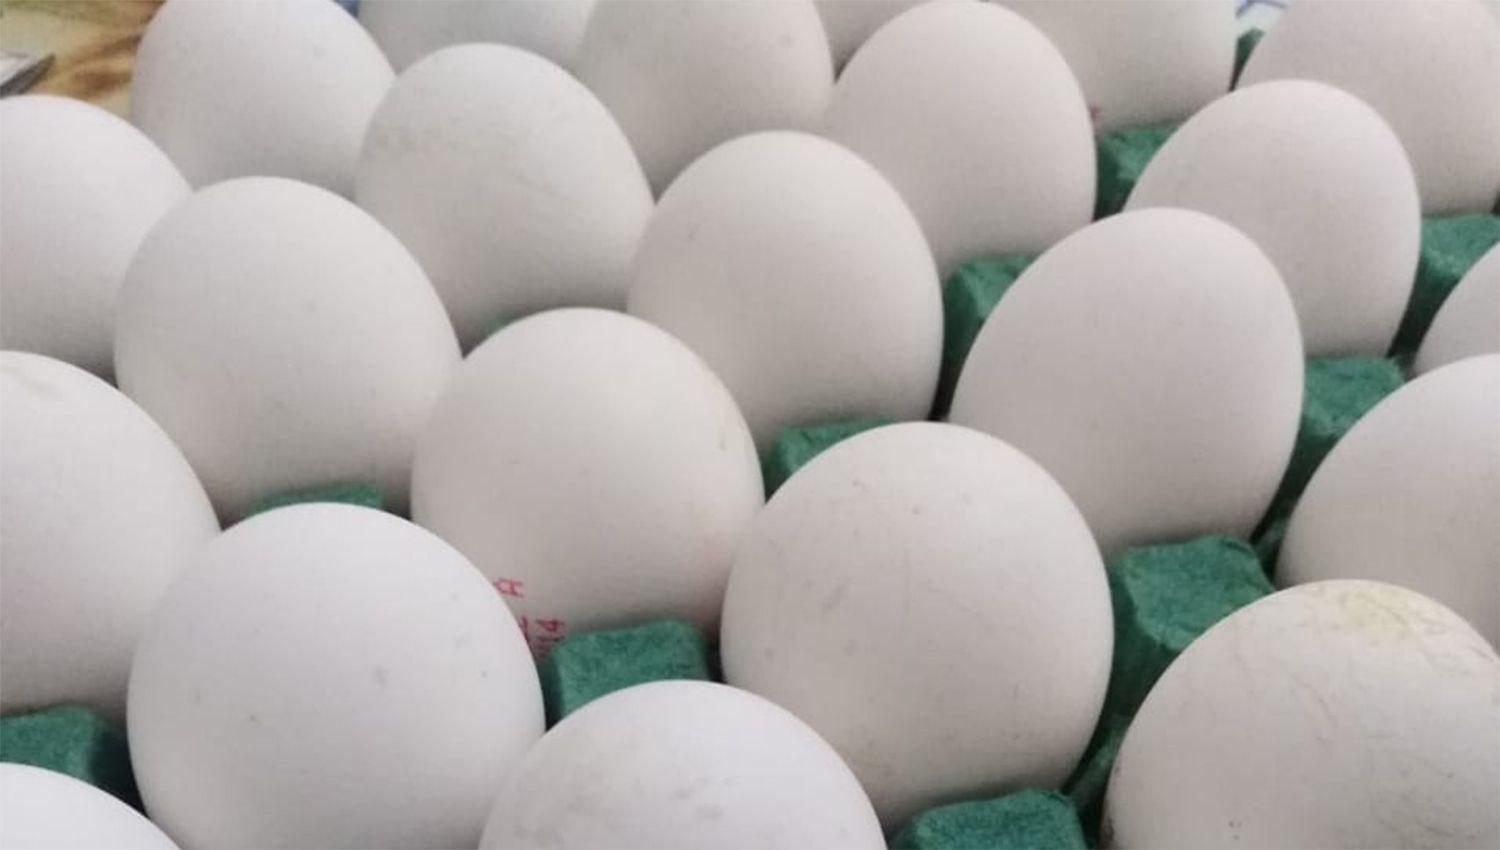 Aumentoacute el precio de los huevos en comercios de Santiago